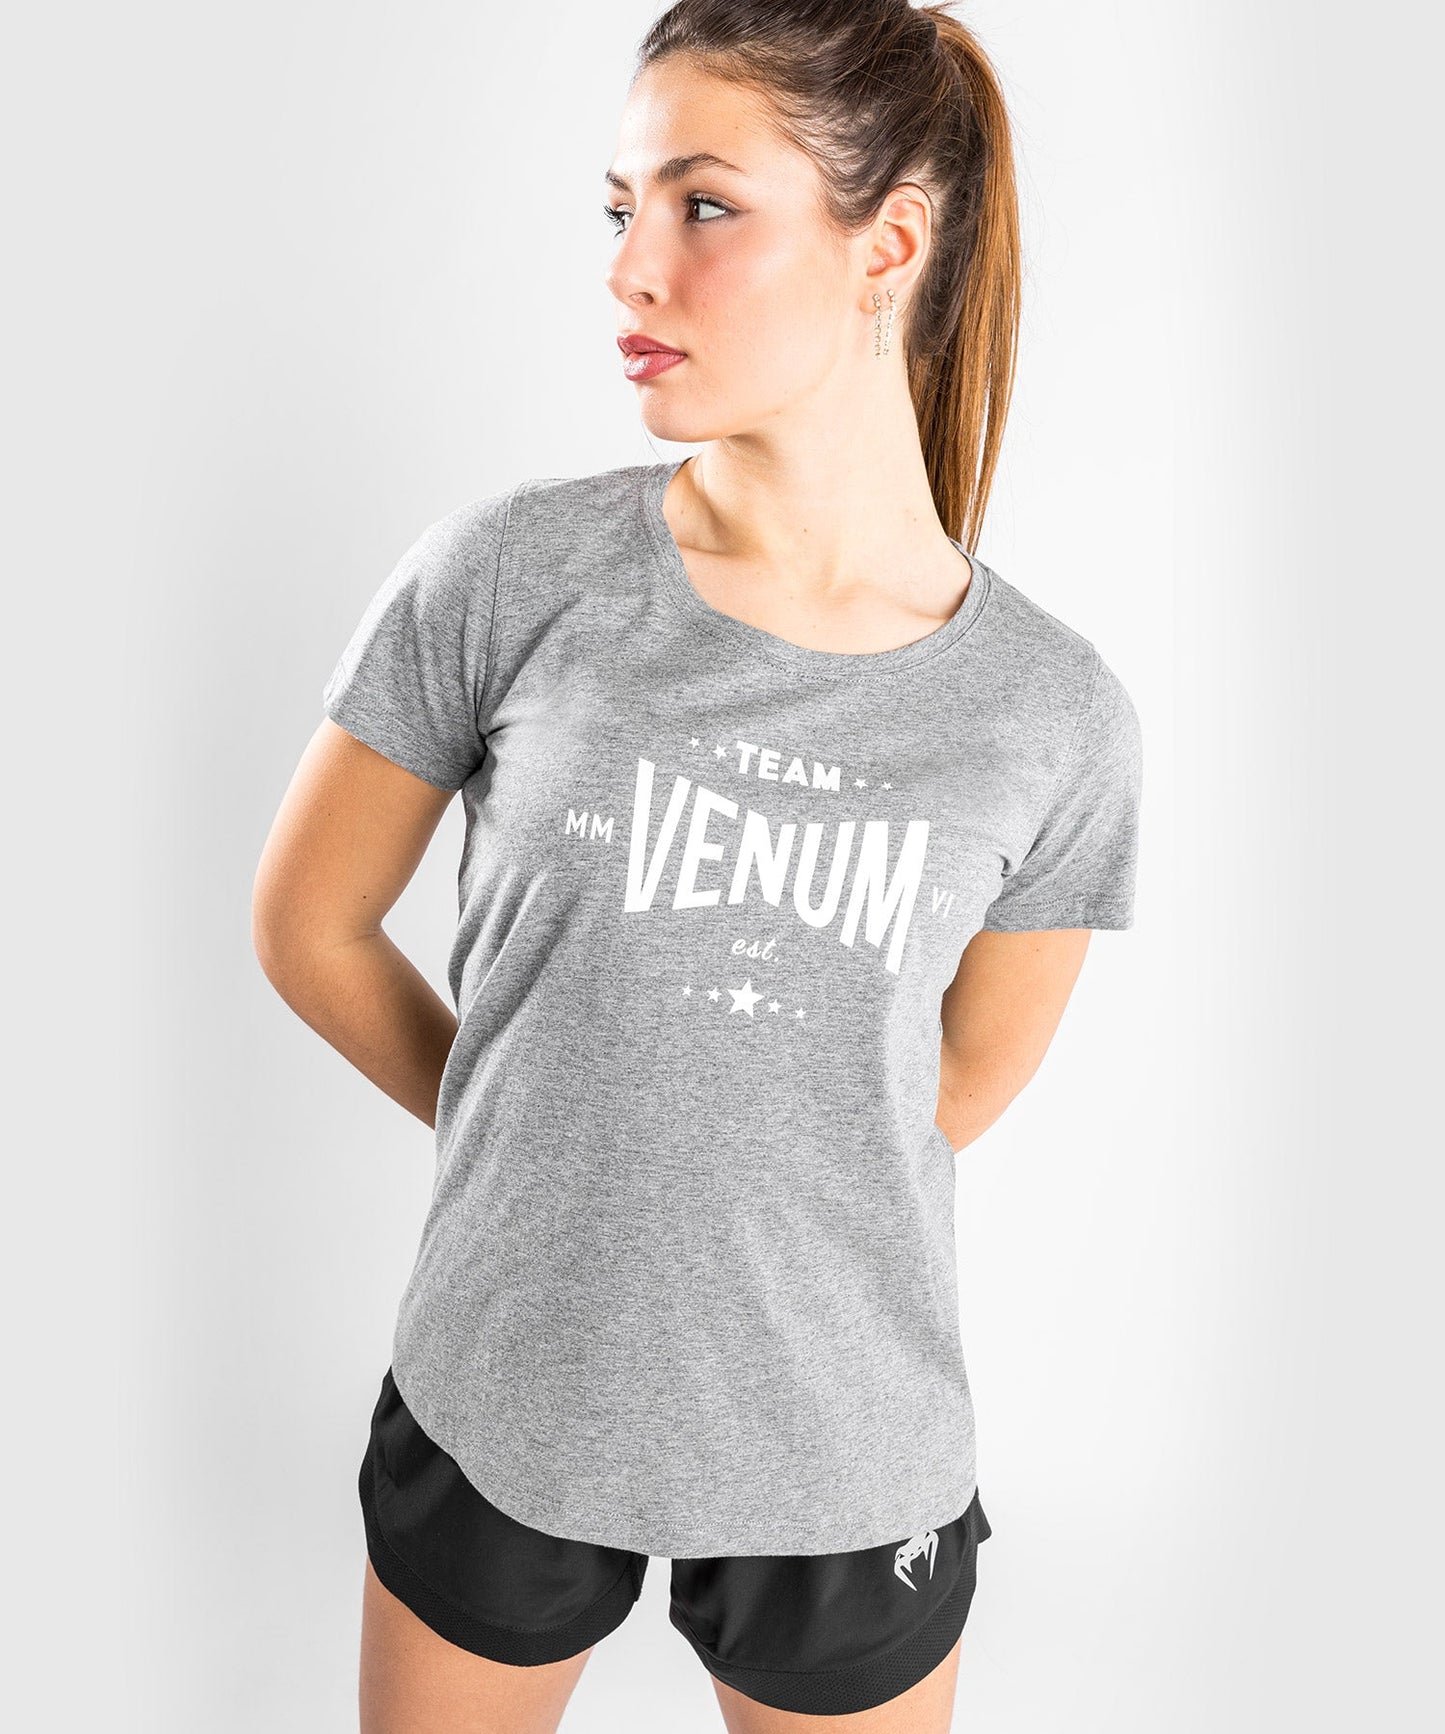 Venum Team 2.0 T-Shirt - For Women - Light Heather Grey